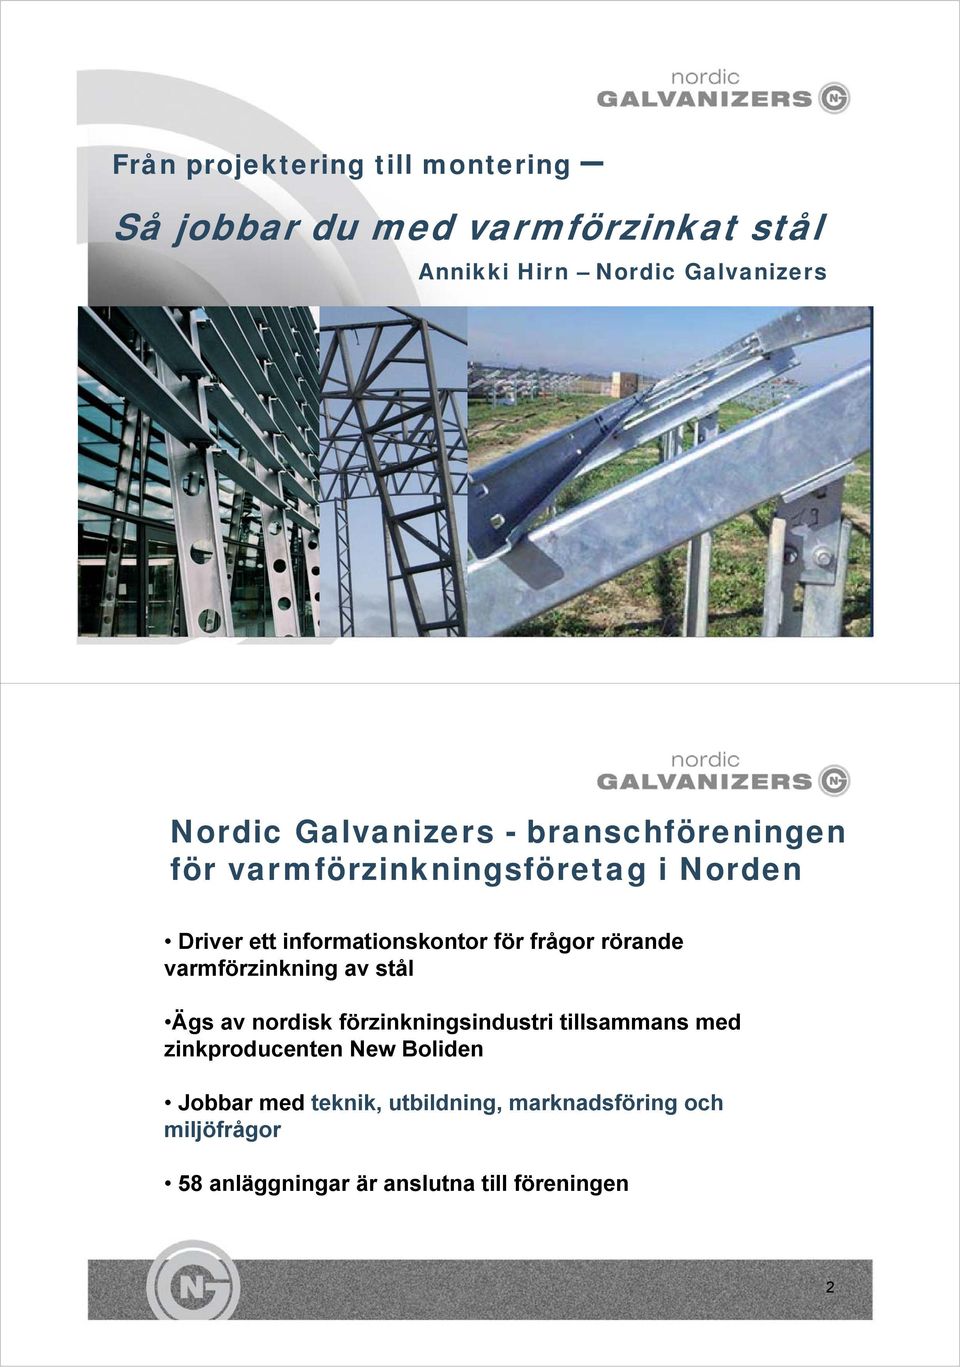 rörande varmförzinkning av stål Ägs av nordisk förzinkningsindustri tillsammans med zinkproducenten New